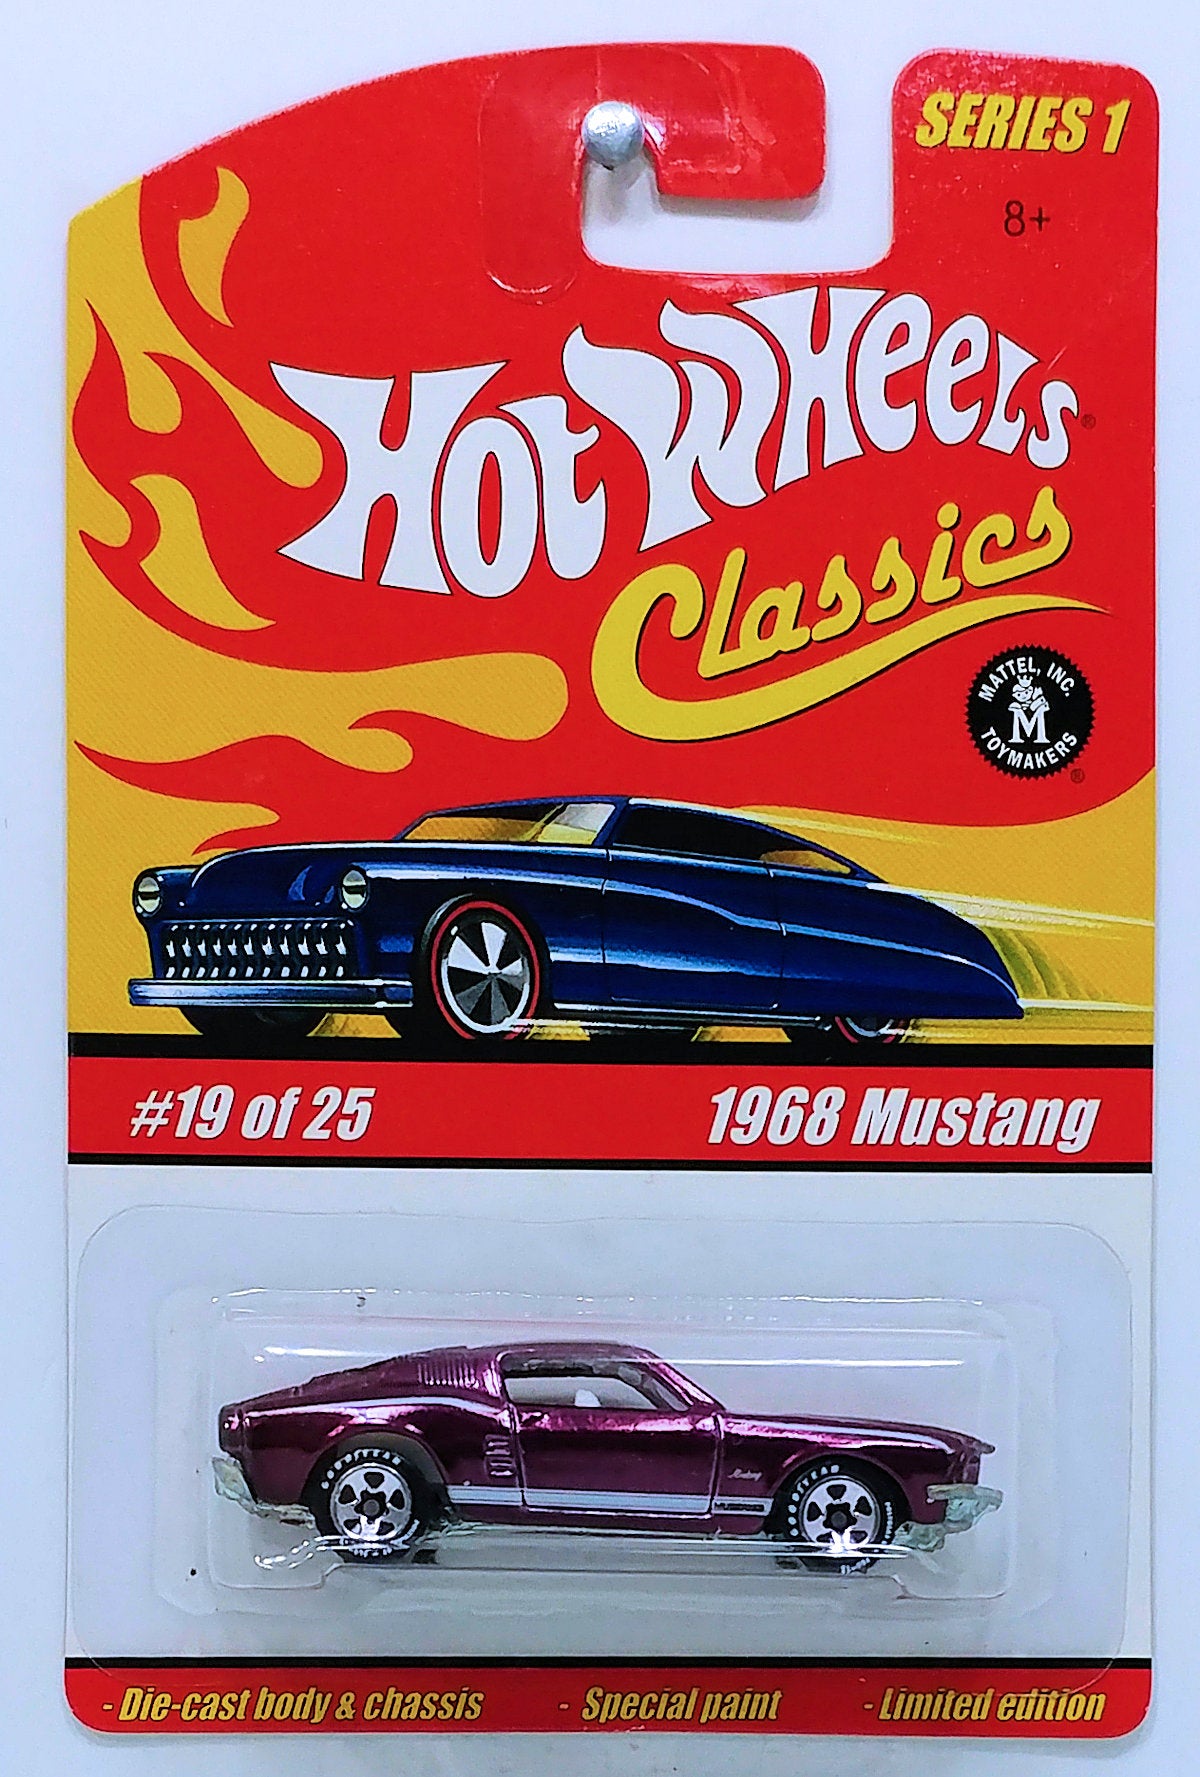 Hot Wheels 2005 - Classics Series 1 # 19/25 - 1968 Mustang - Spectraflame Purple - 5 Spokes & Good Year - Opening Hood - Metal/Metal